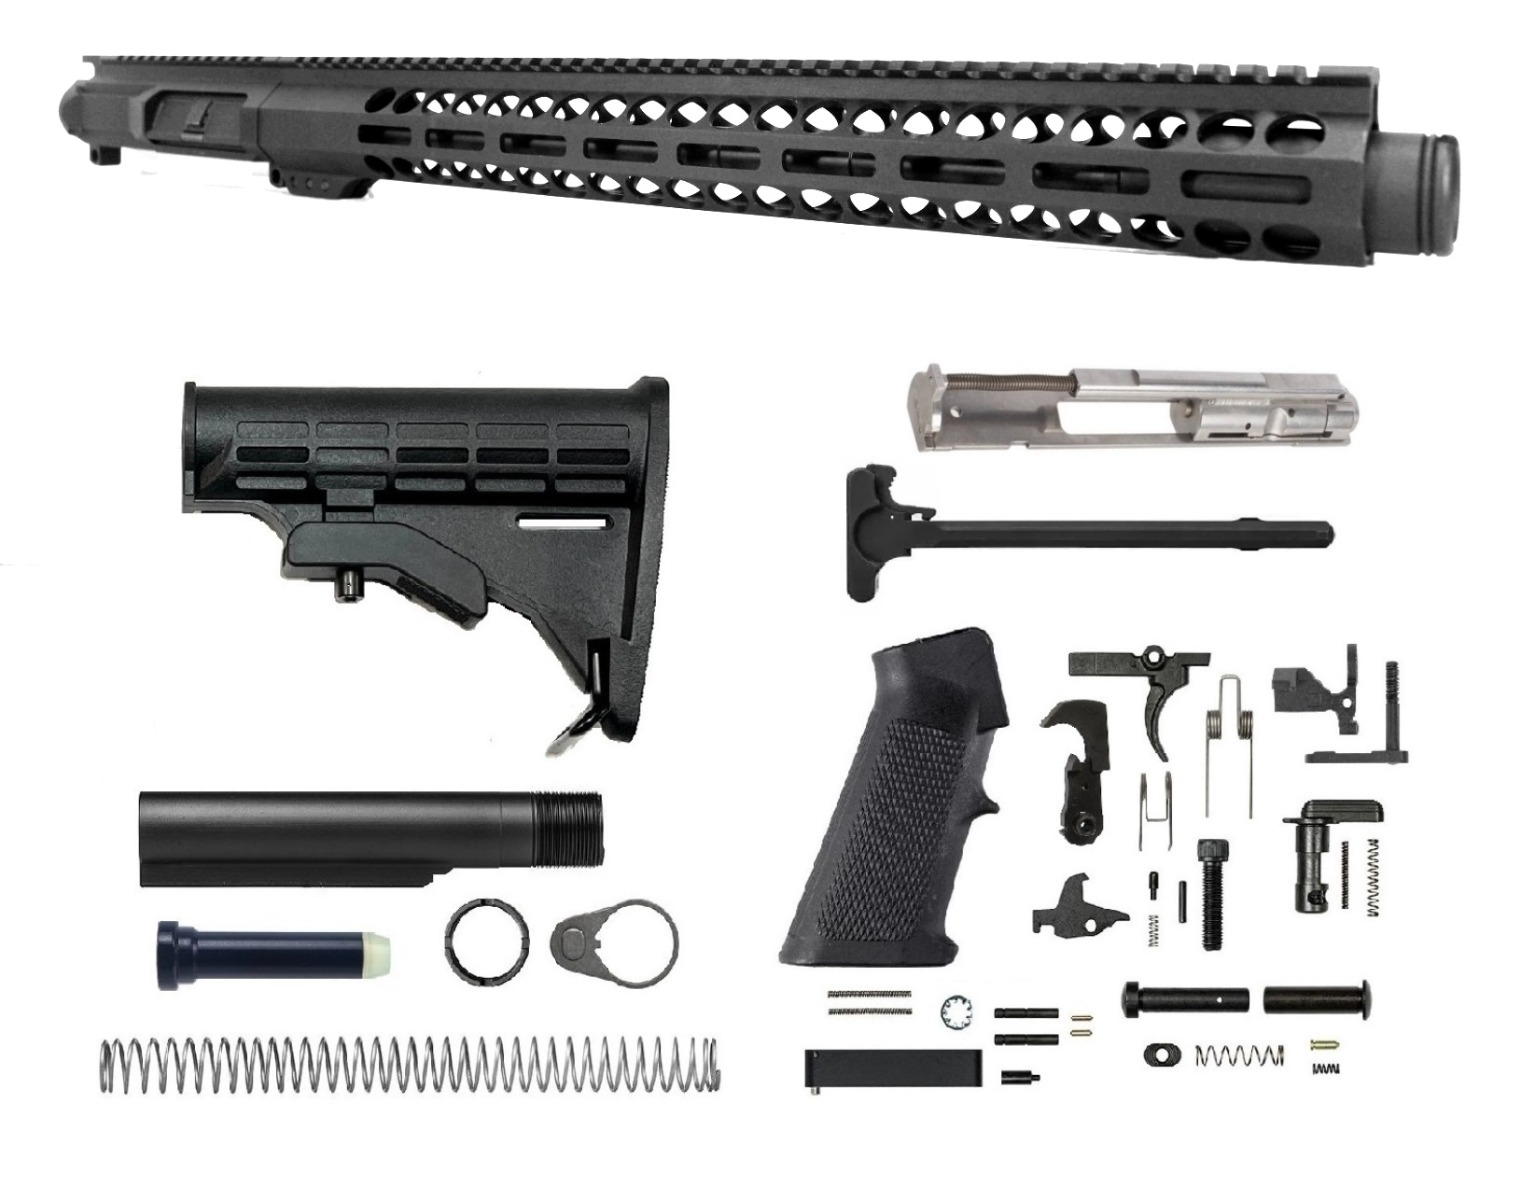 16 inch 22LR AR-15 Upper Kit | USA MADE